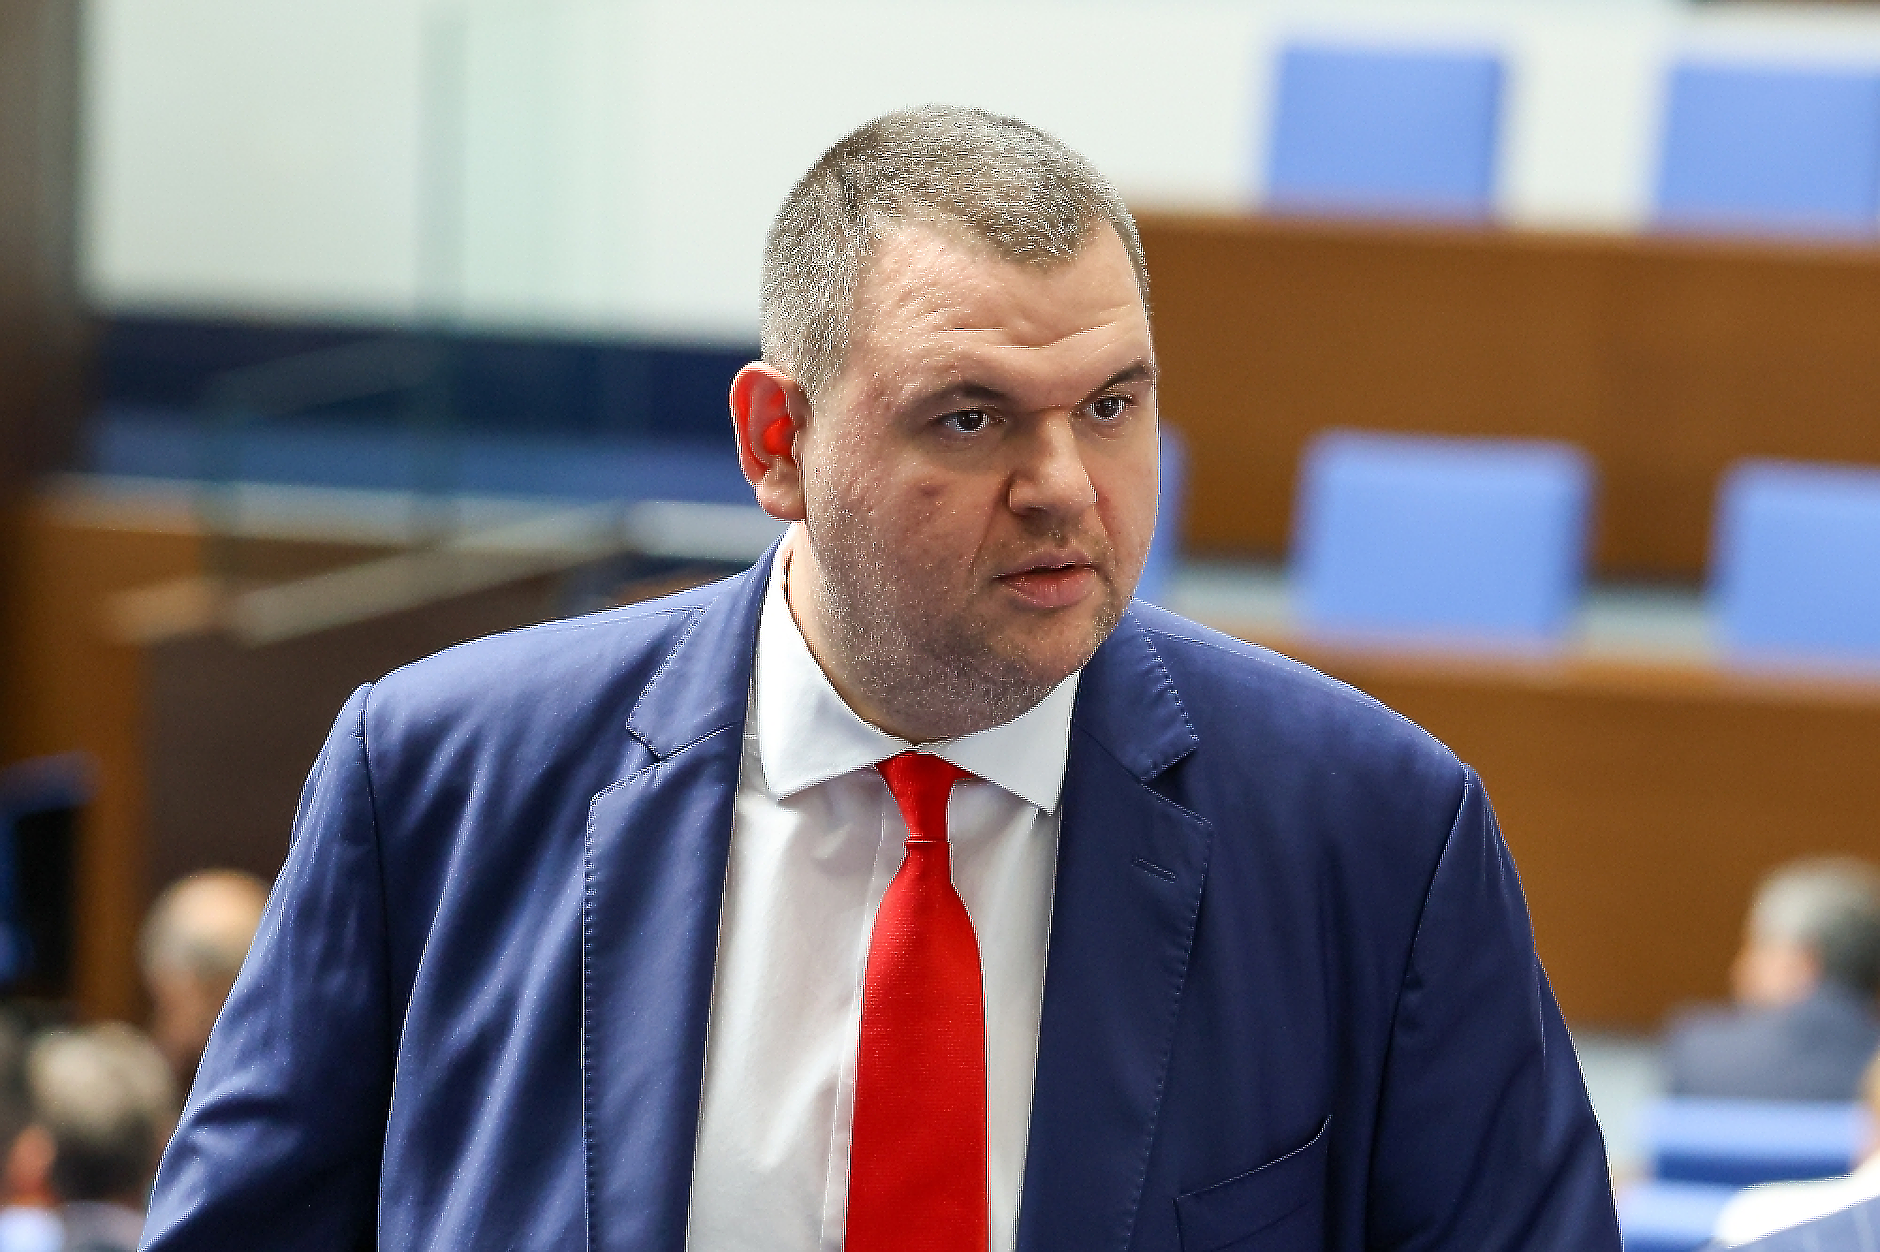 Пеевски: Парламентарна комисия да провери дейността на групата около Нотариуса, искат Сарафов да обясни в парламента